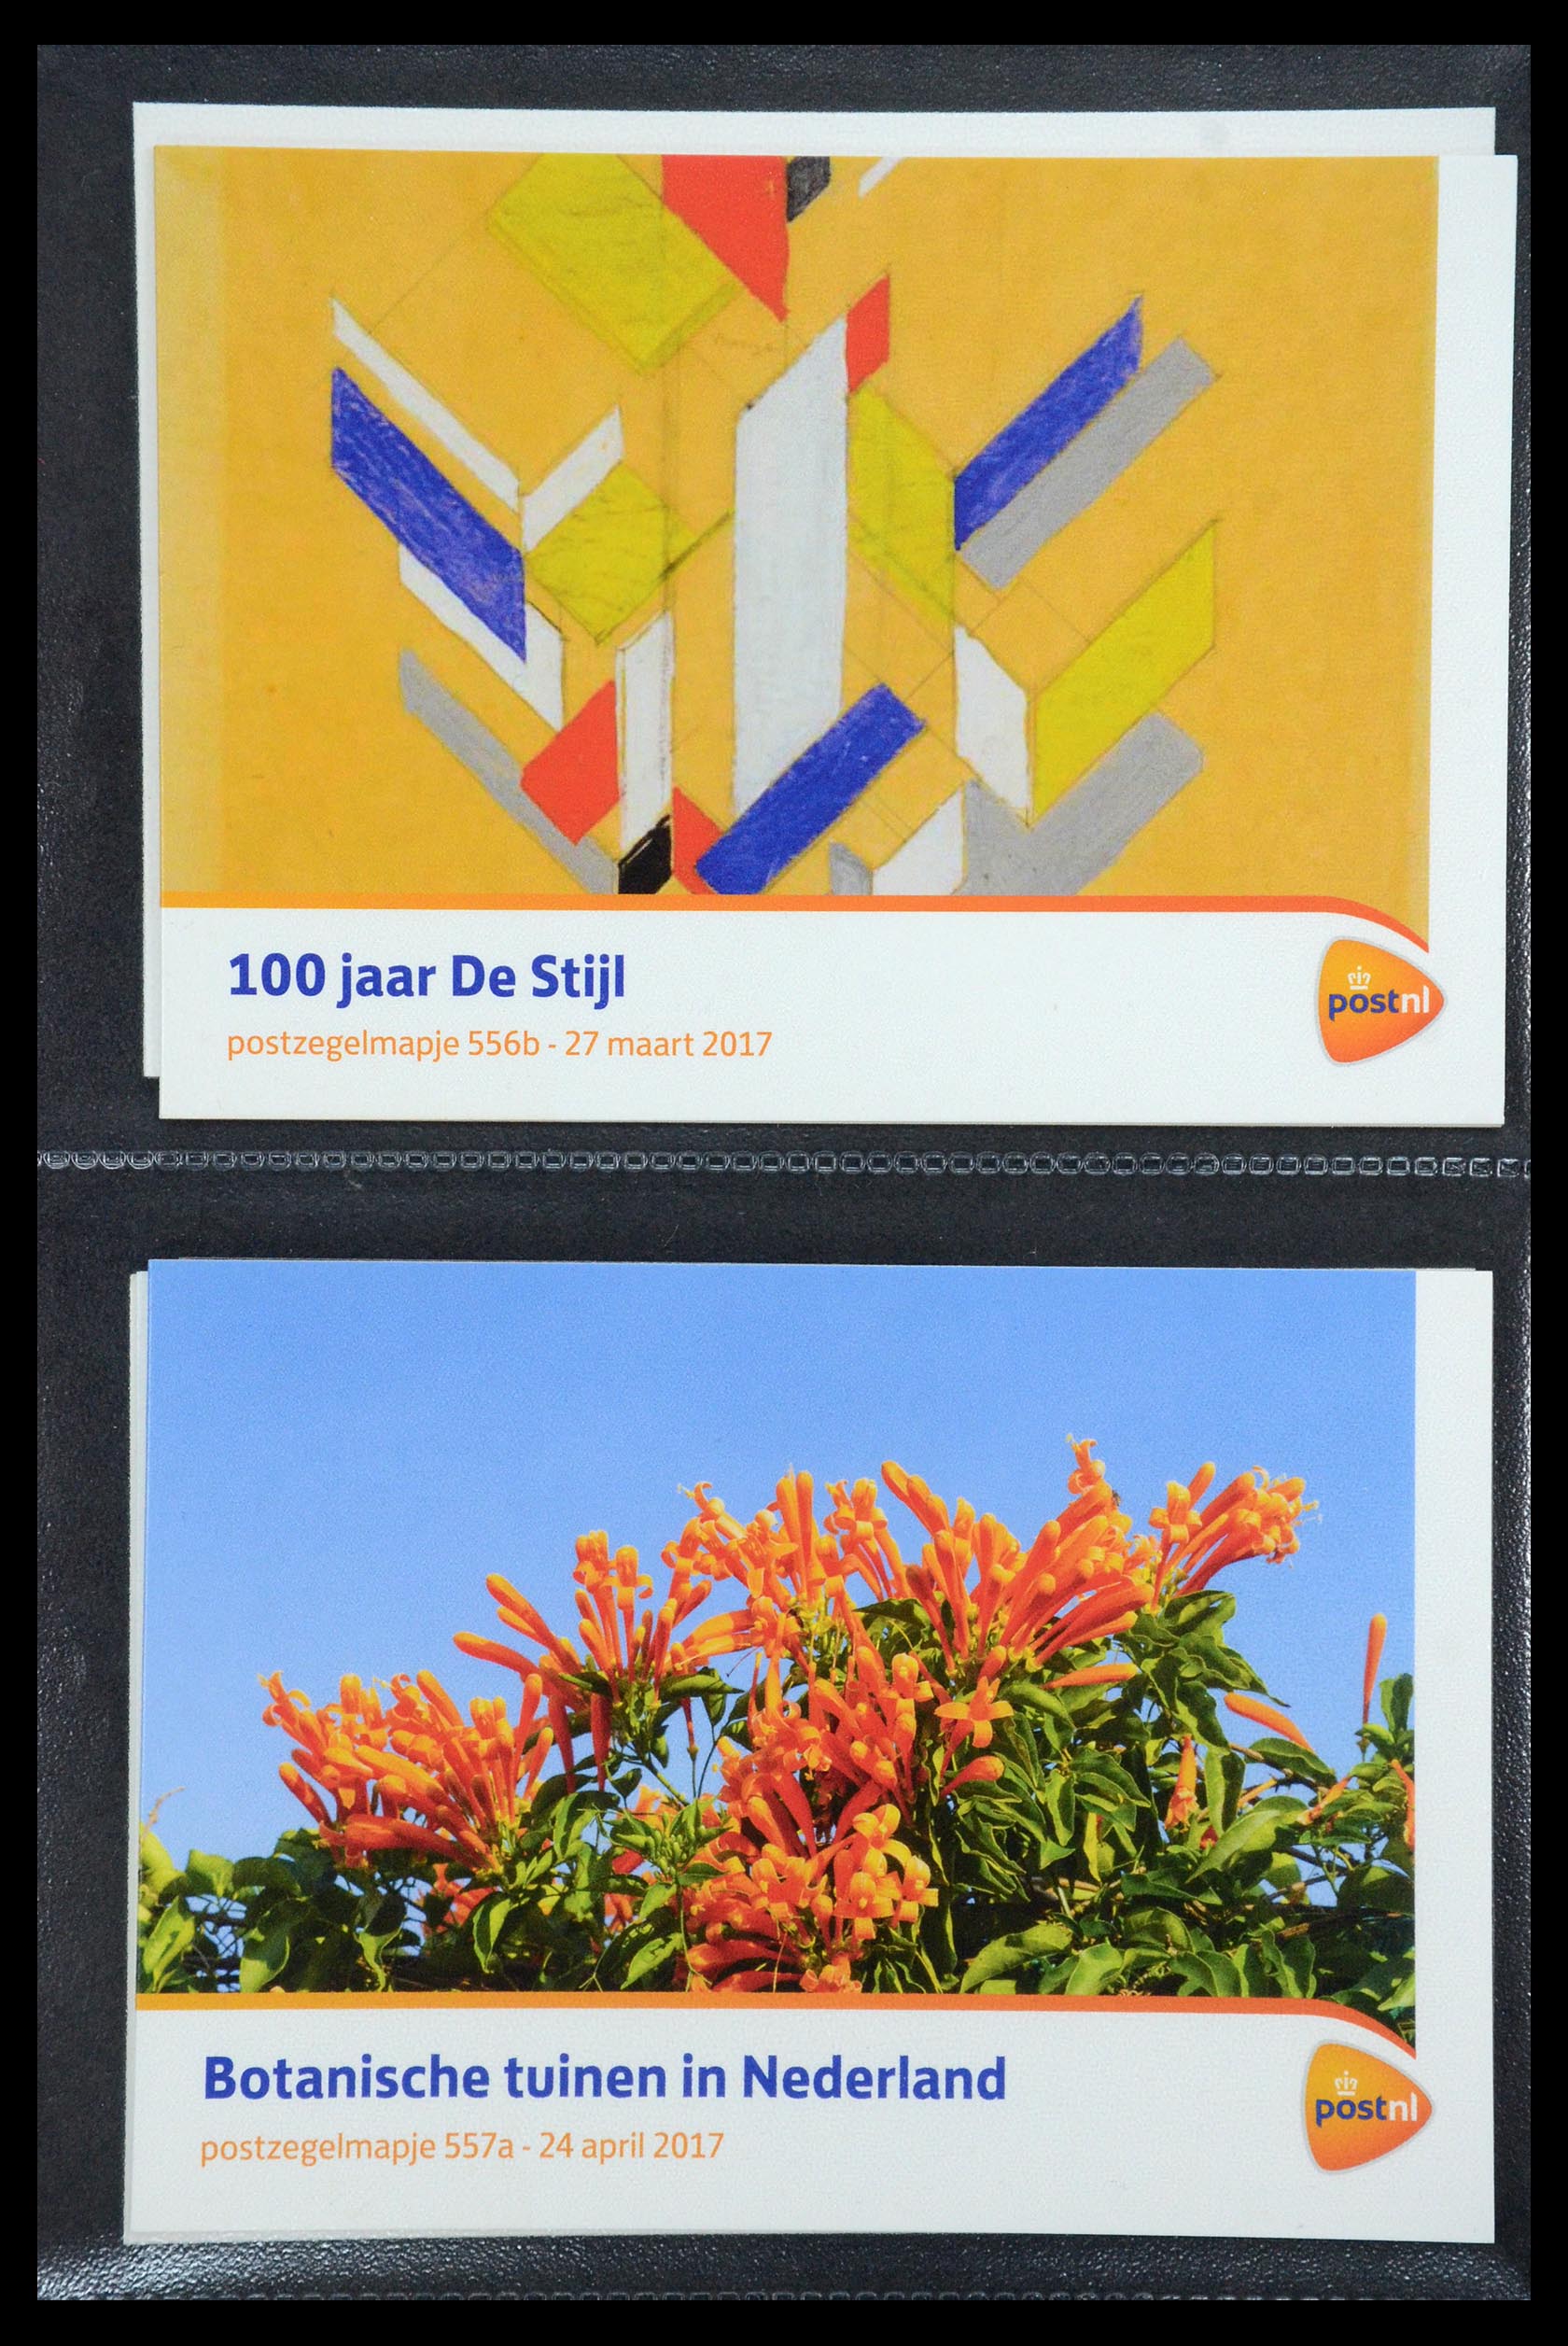 35187 333 - Stamp Collection 35187 Netherlands PTT presentation packs 1982-2019!